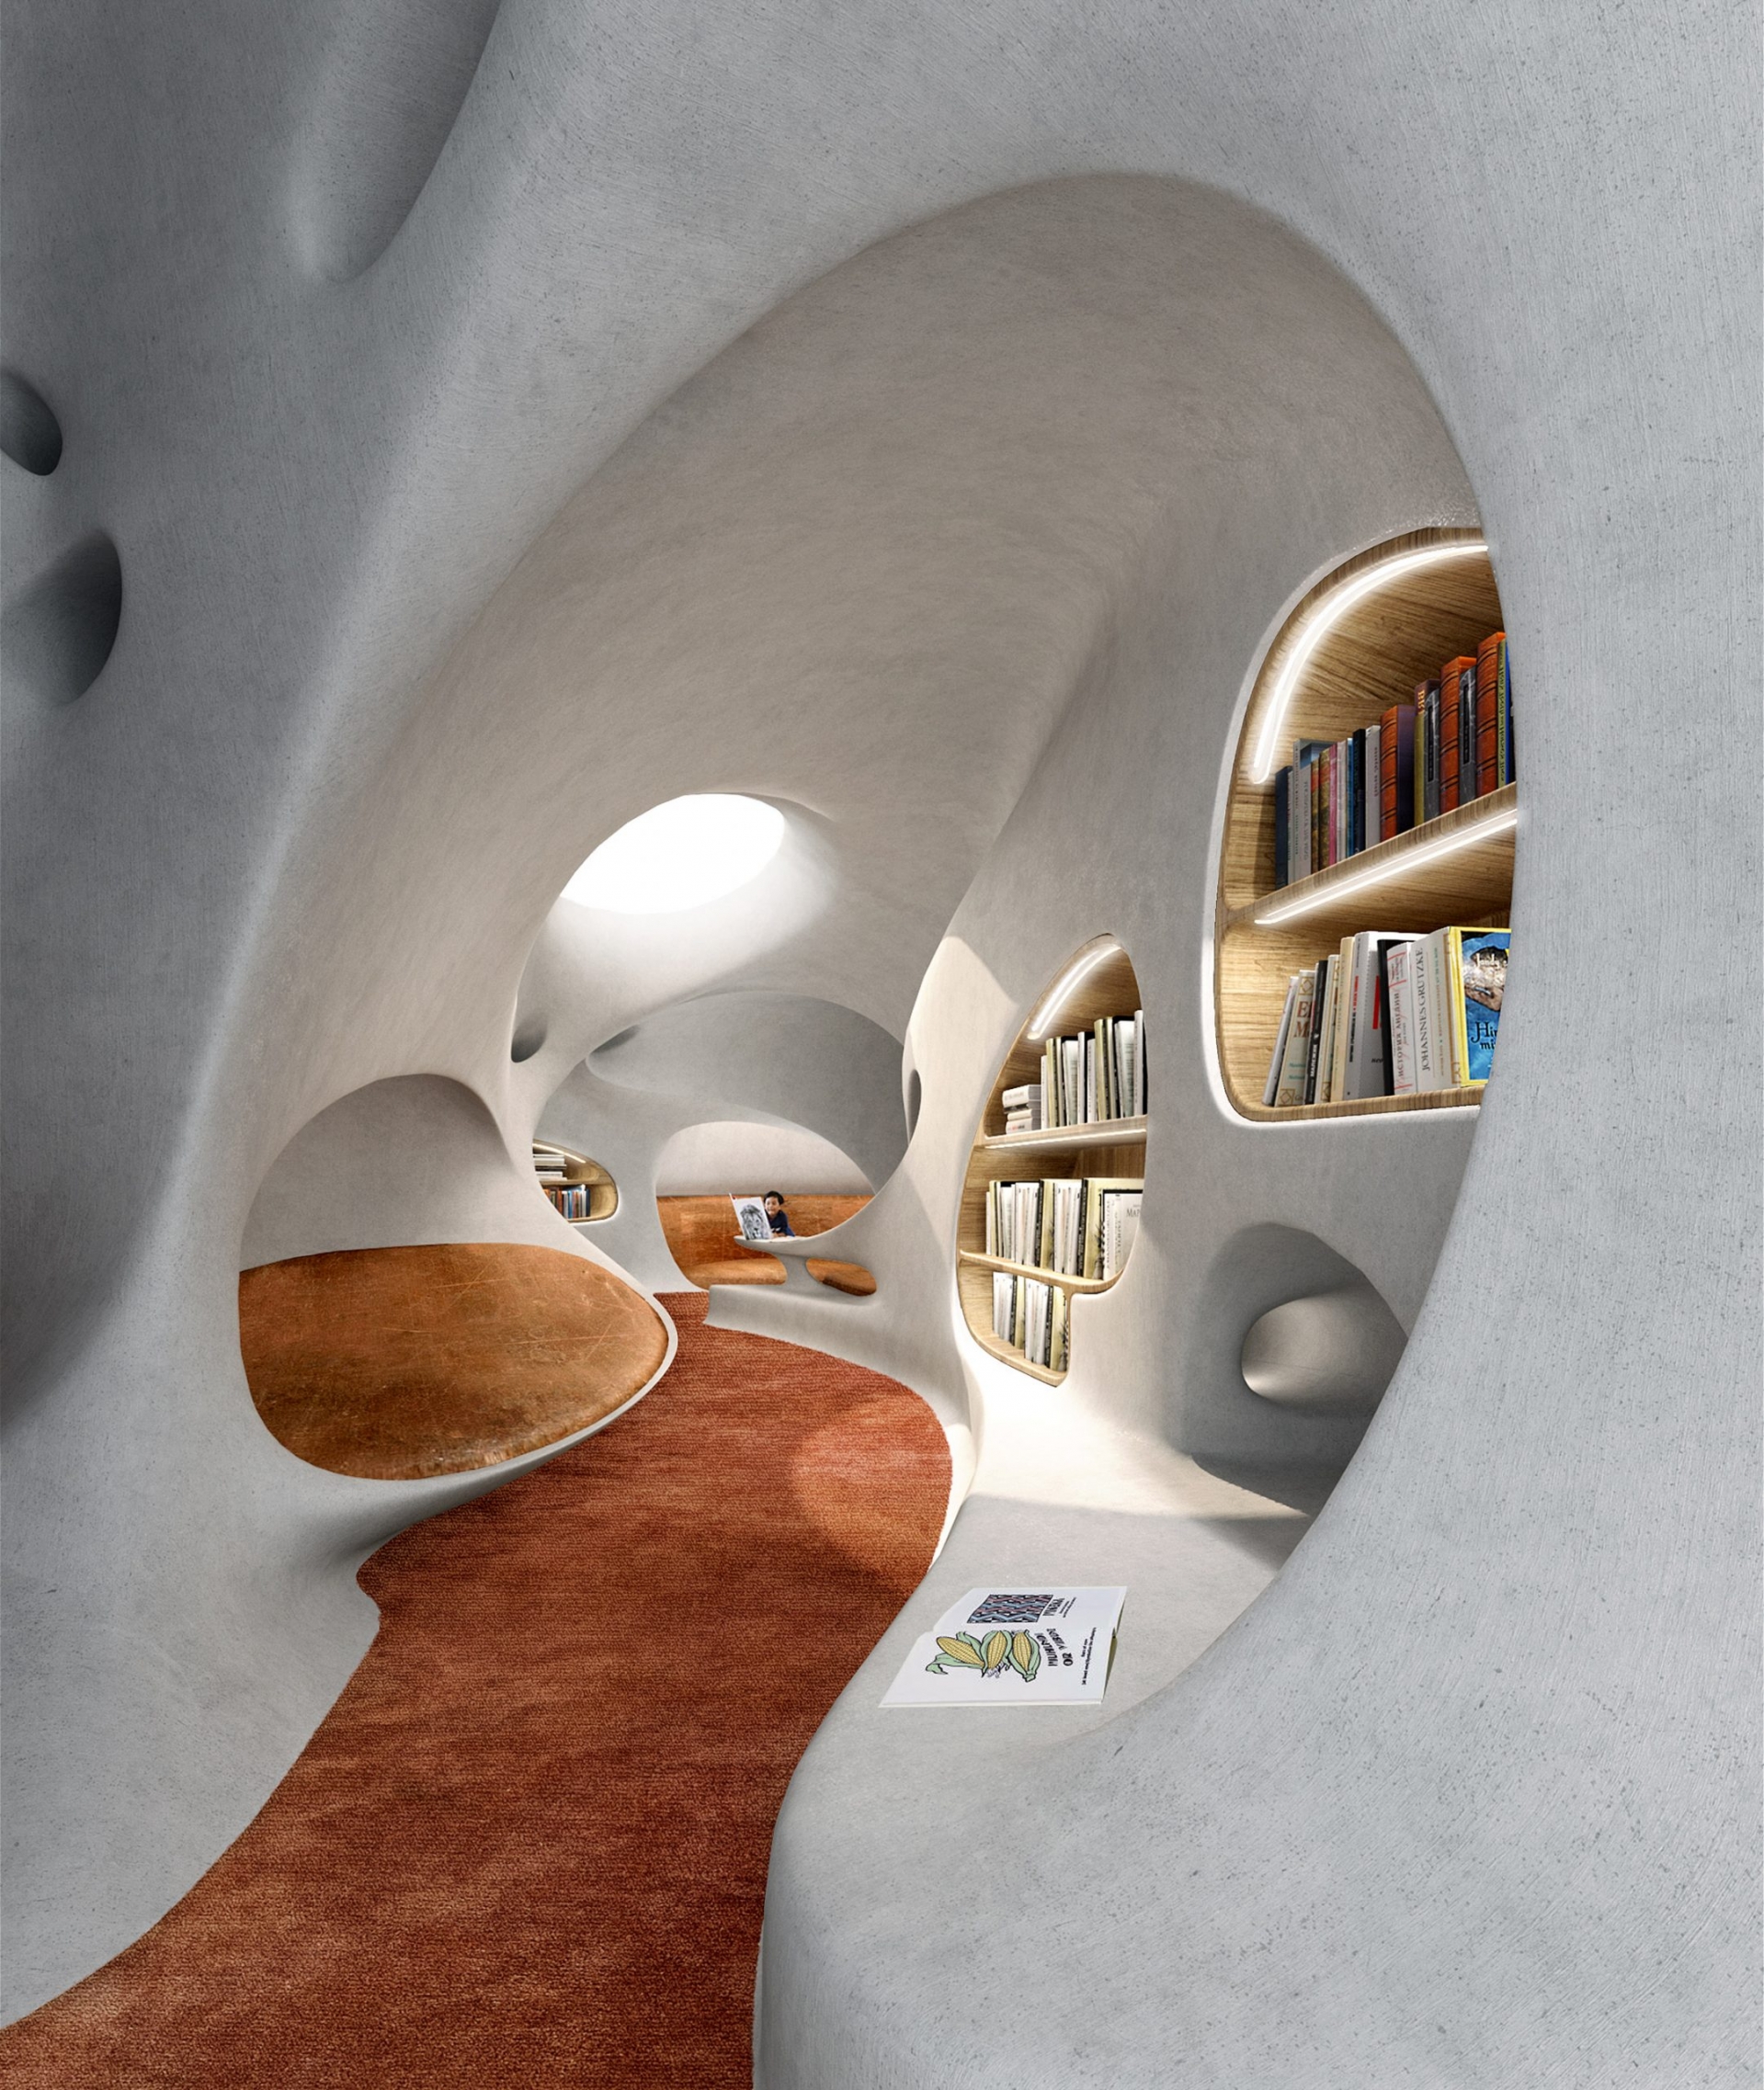 Khu vực thư viện cho trẻ em sẽ thiết kế dạng đường hầm.